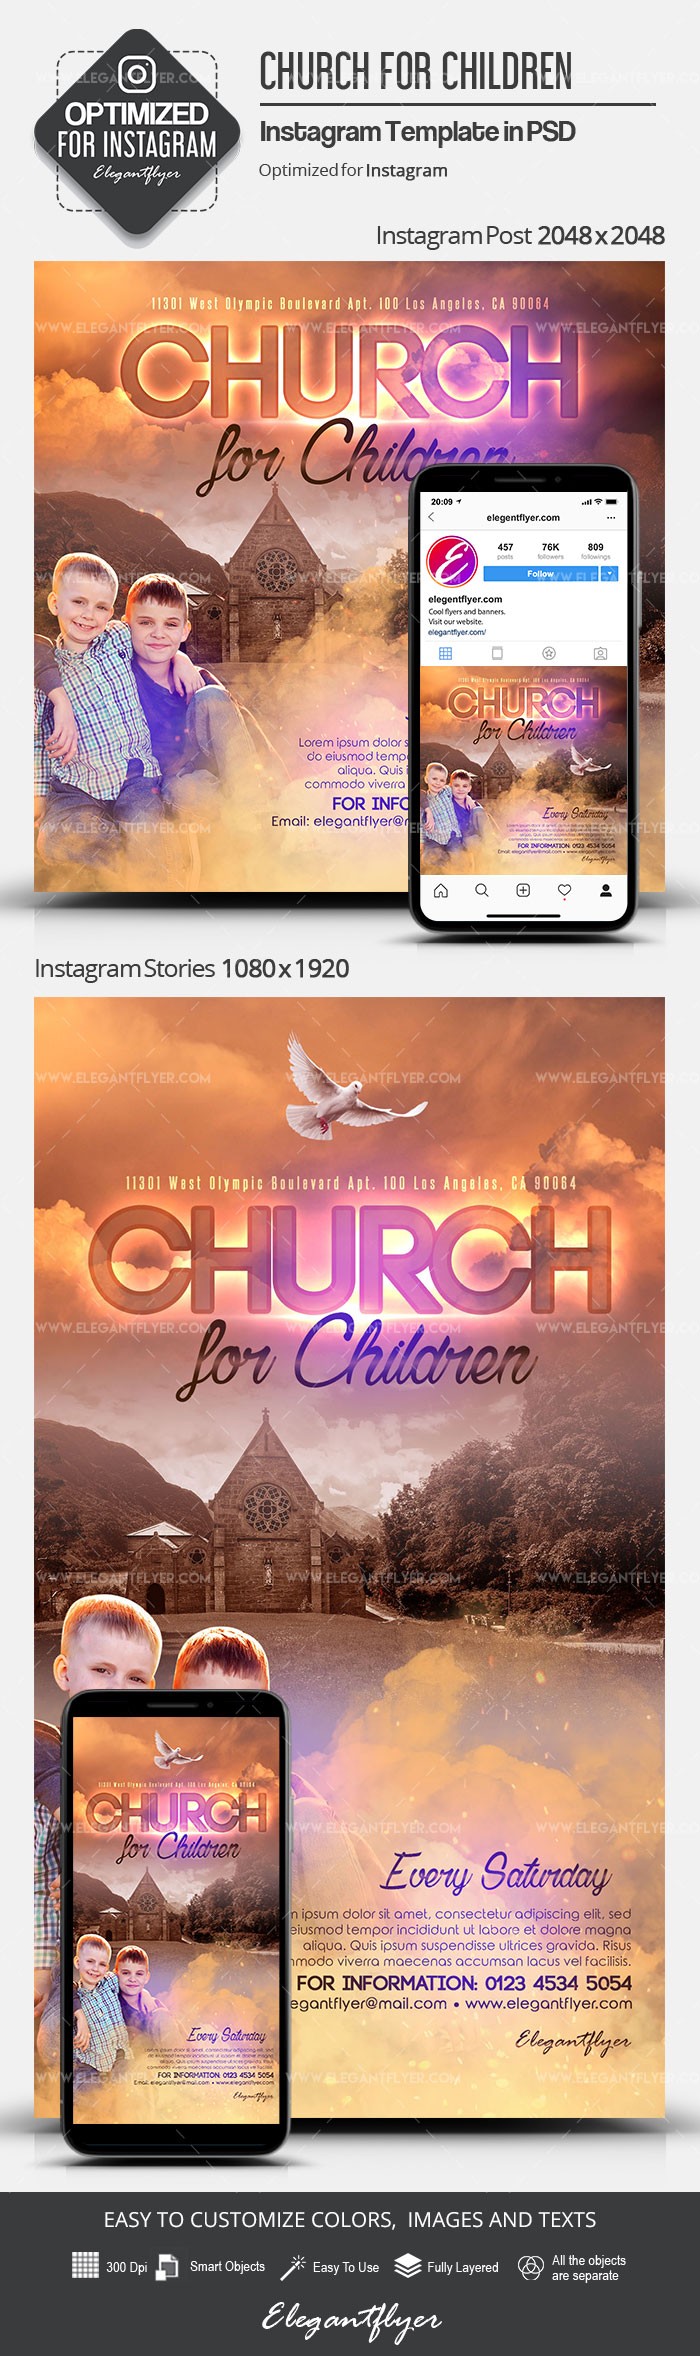 Church for Children Instagram by ElegantFlyer